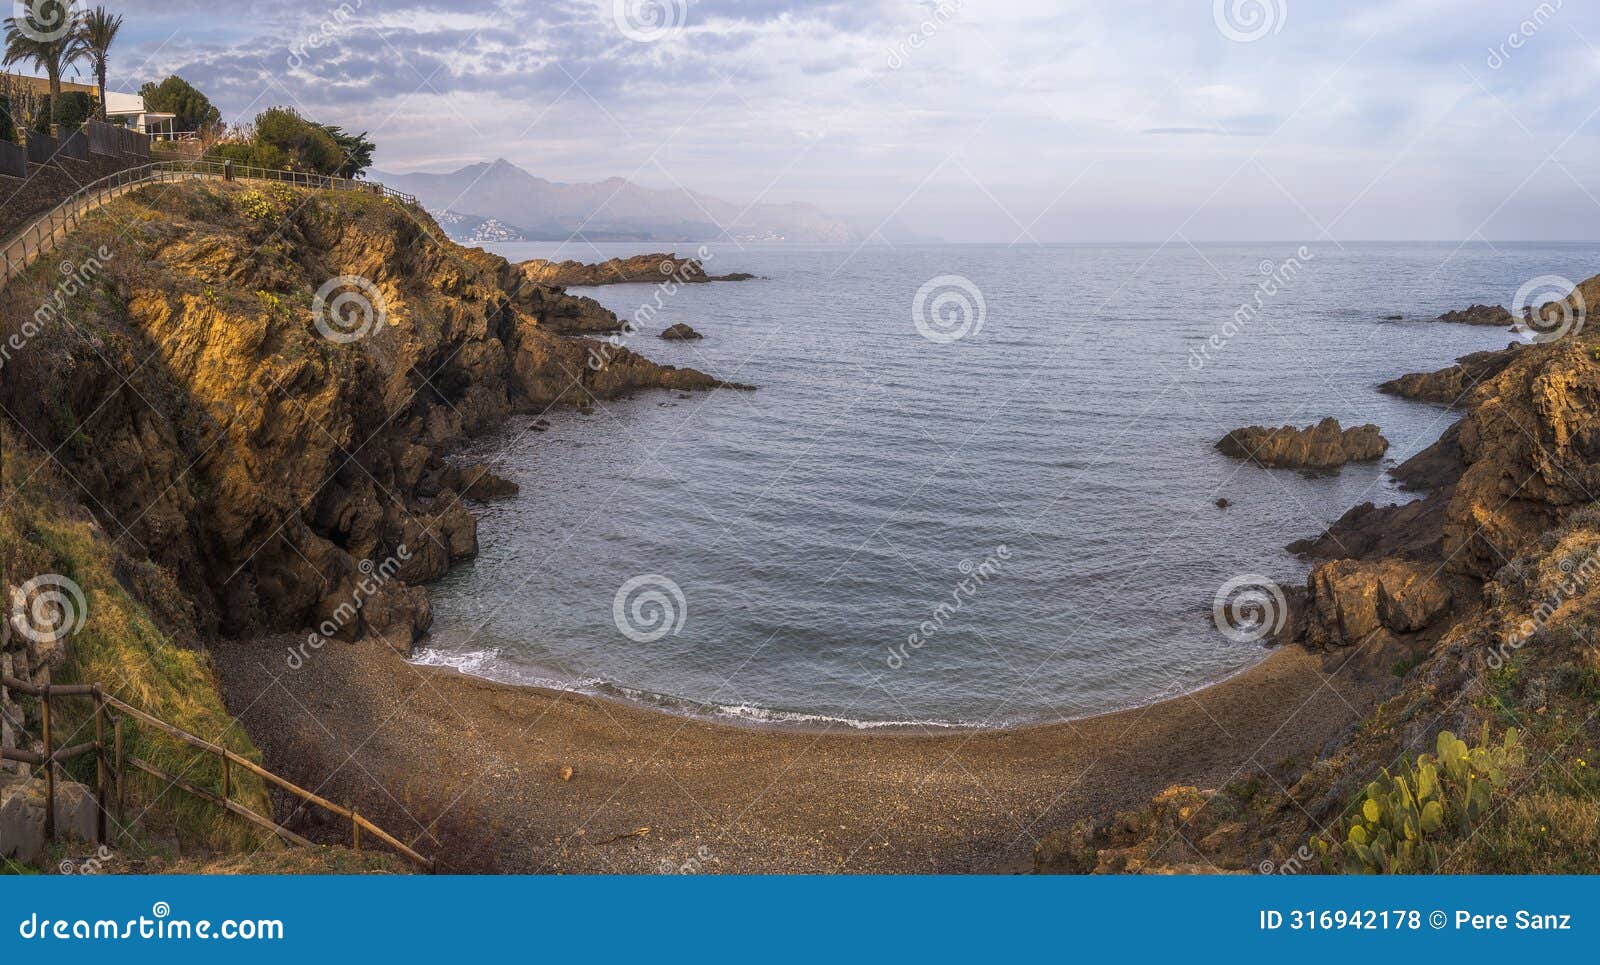 coastal path between llanÃÂ§a and port de la selva in costa brava, catalonia